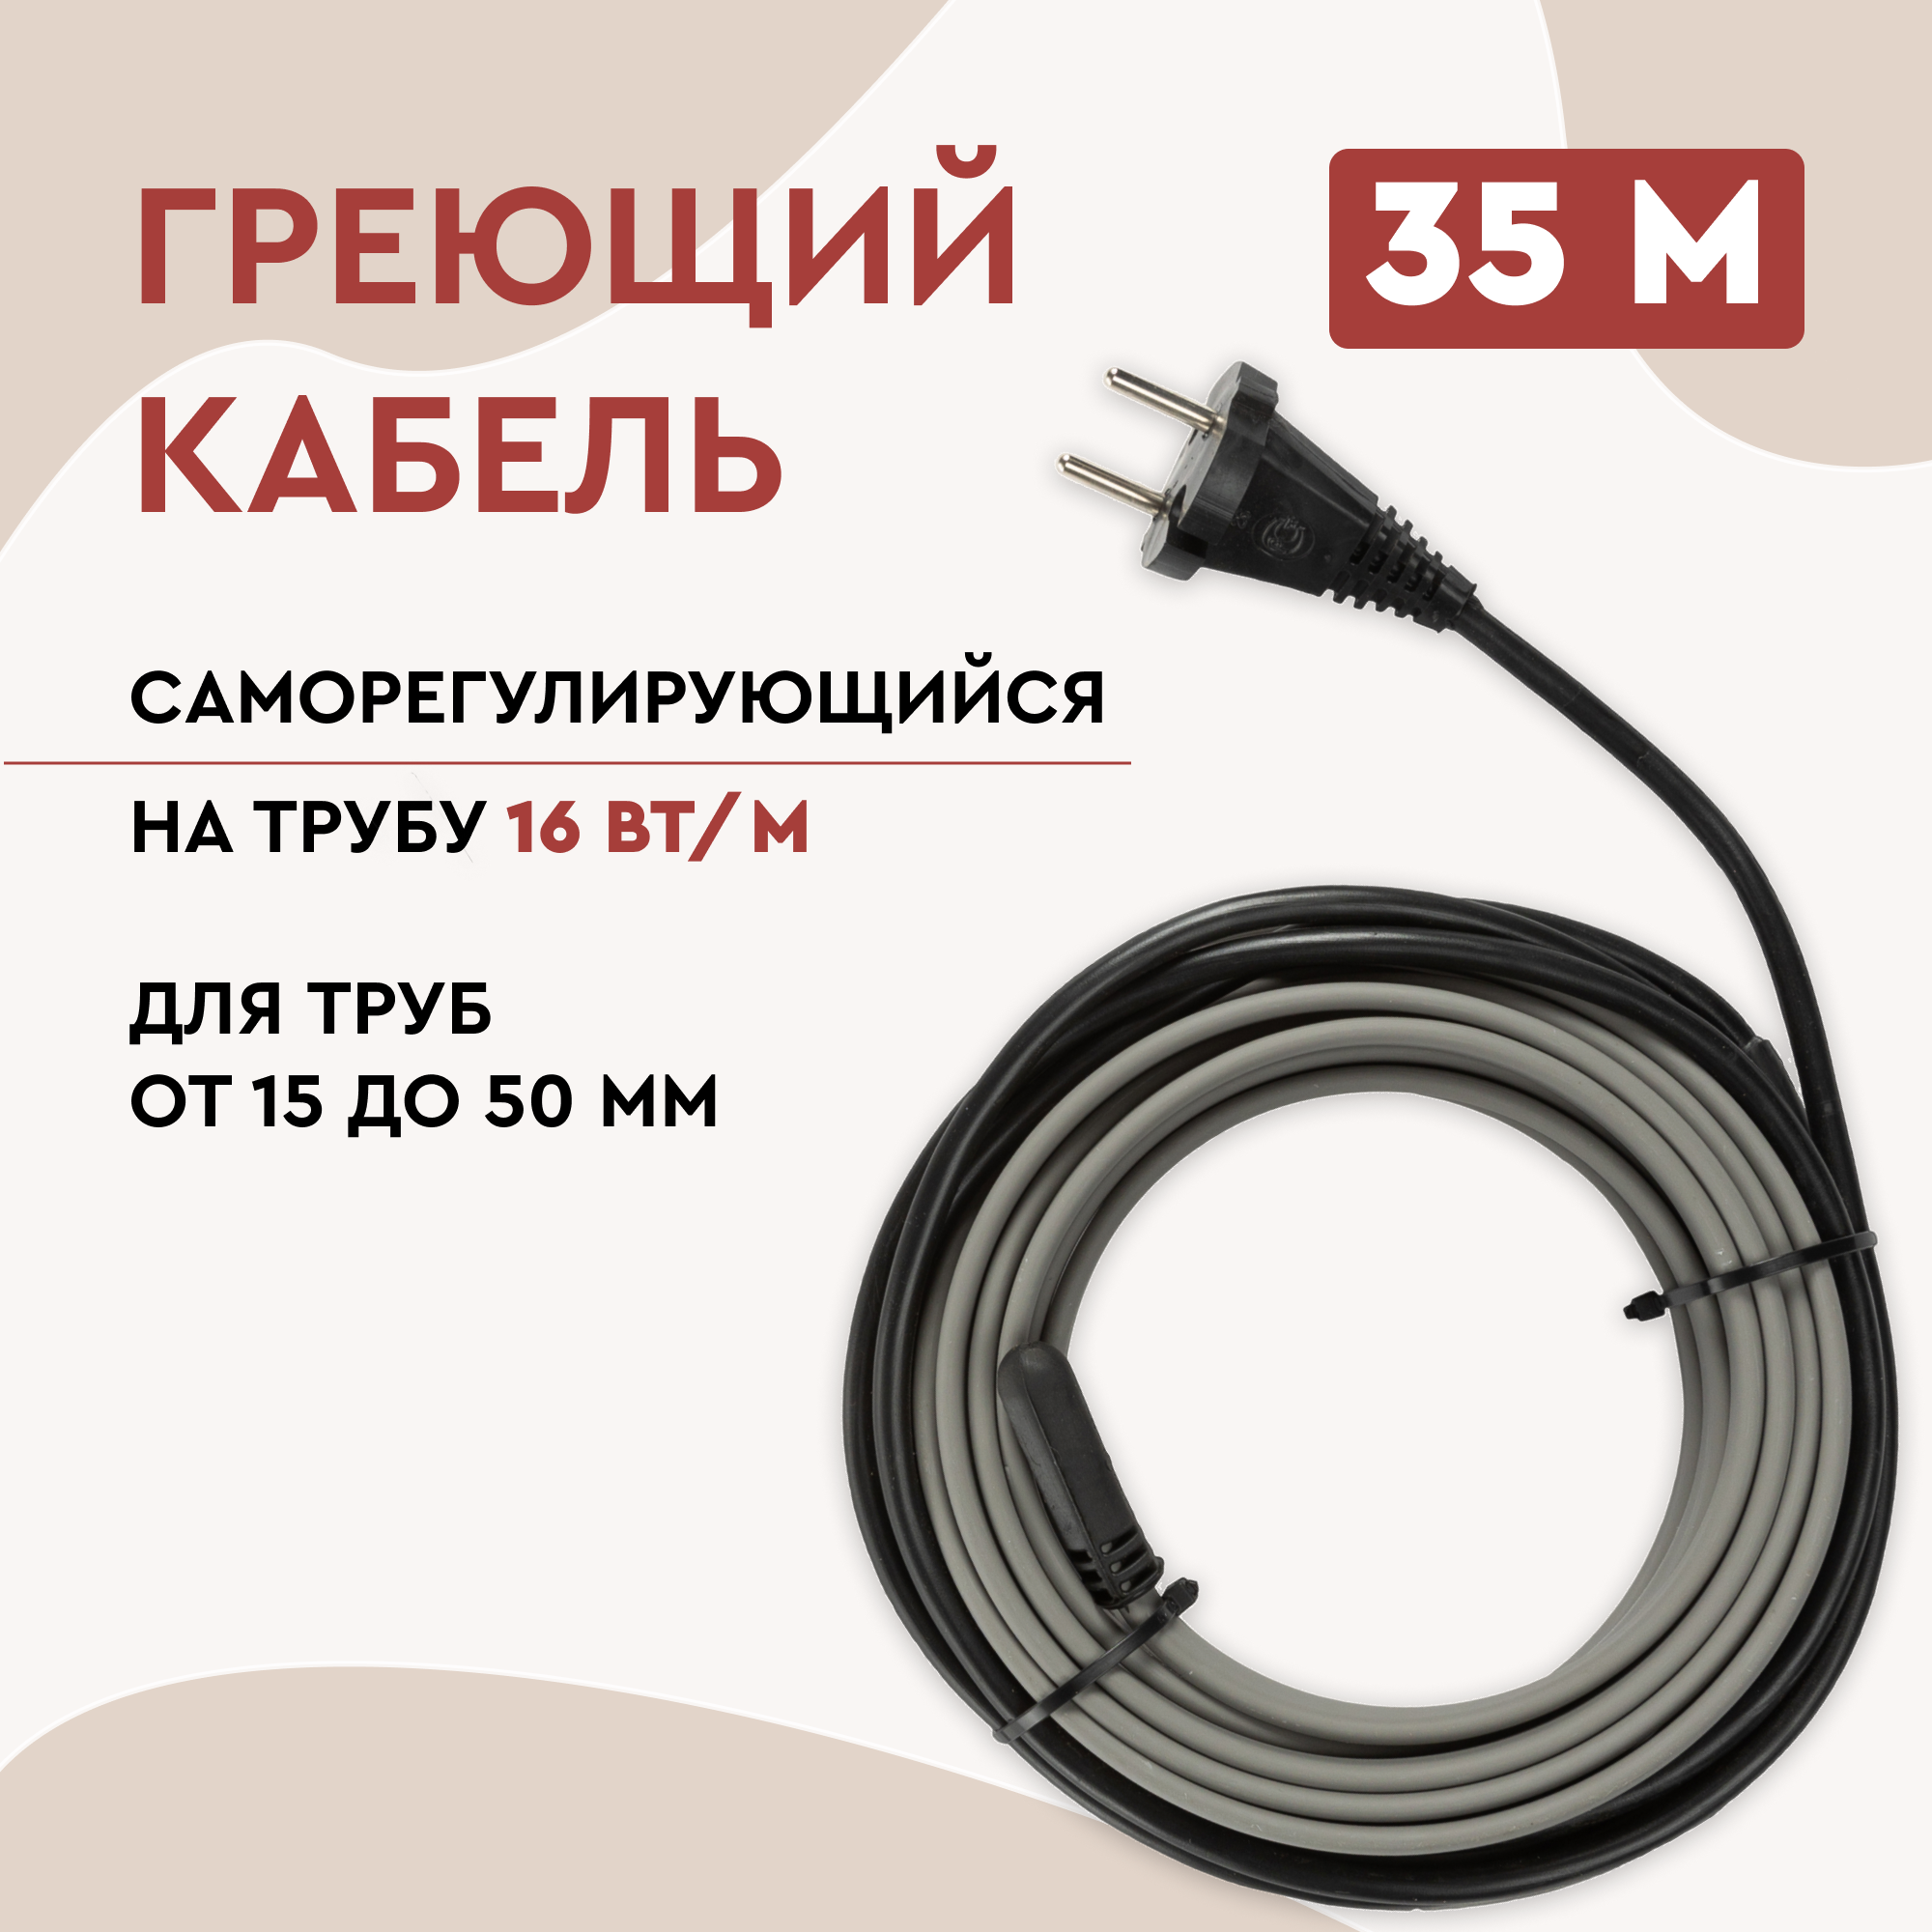 Греющий кабель Lite на трубу 35м 560Вт